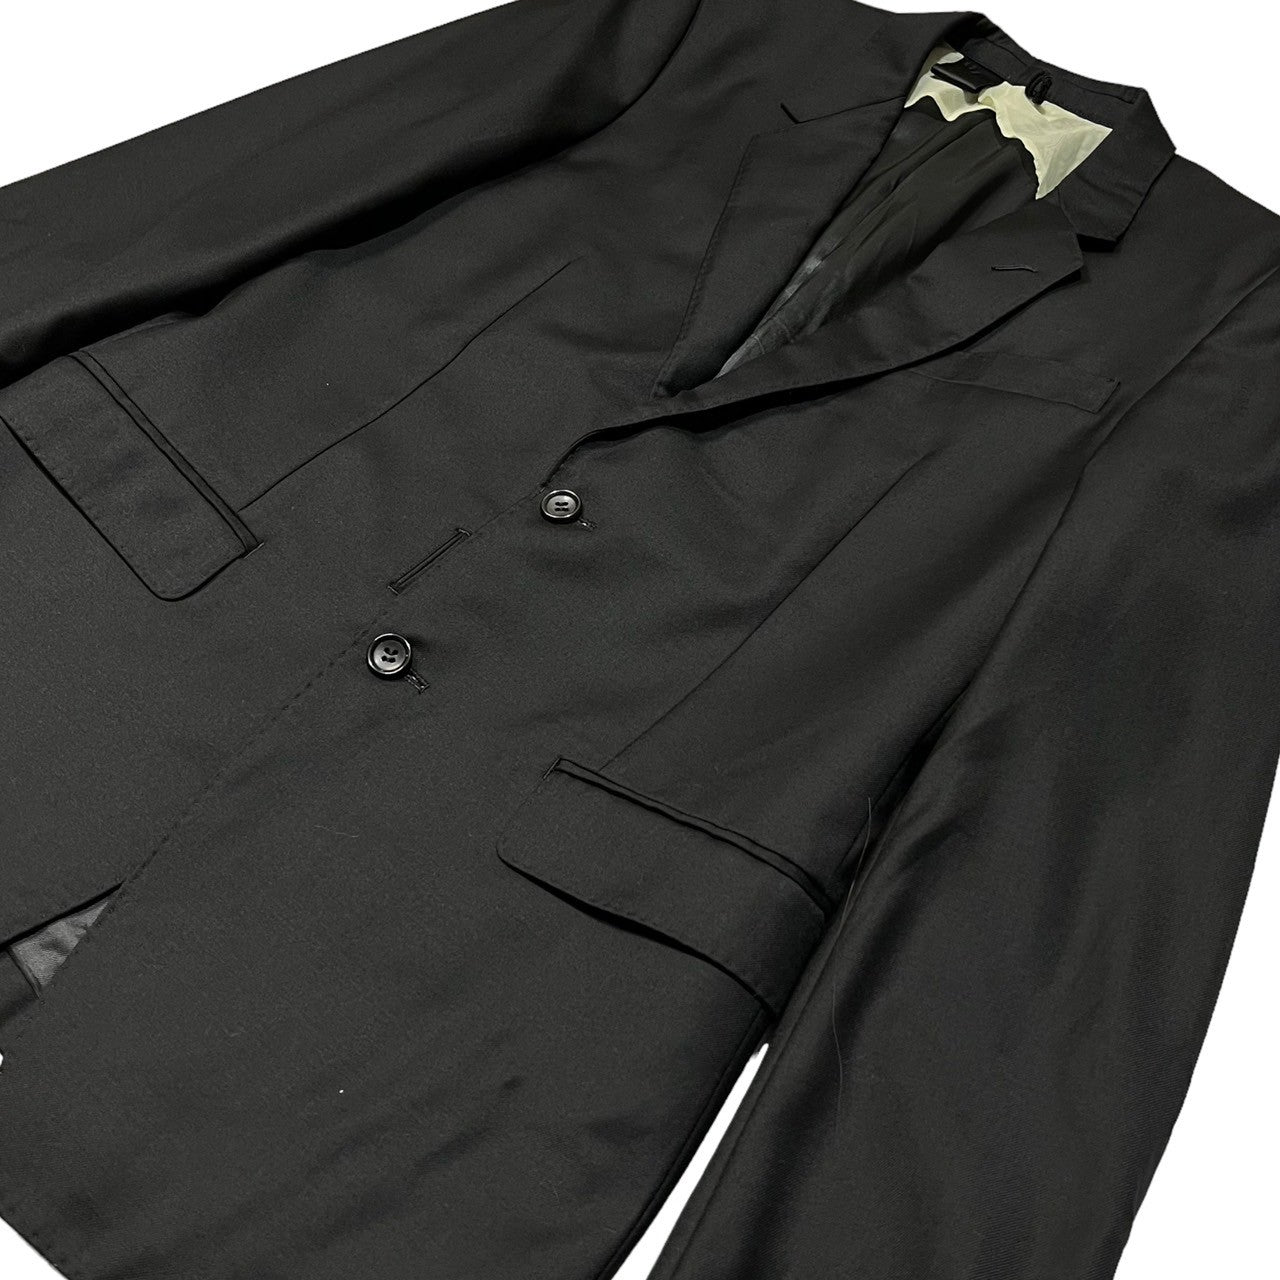 N.HOOLYWOOD(エヌハリウッド ミスターハリウッド) setup suit セットアップ スーツ テーラード ジャケット スラックス スーツ  805peg SIZE 38(M) ブラック セットアップ販売